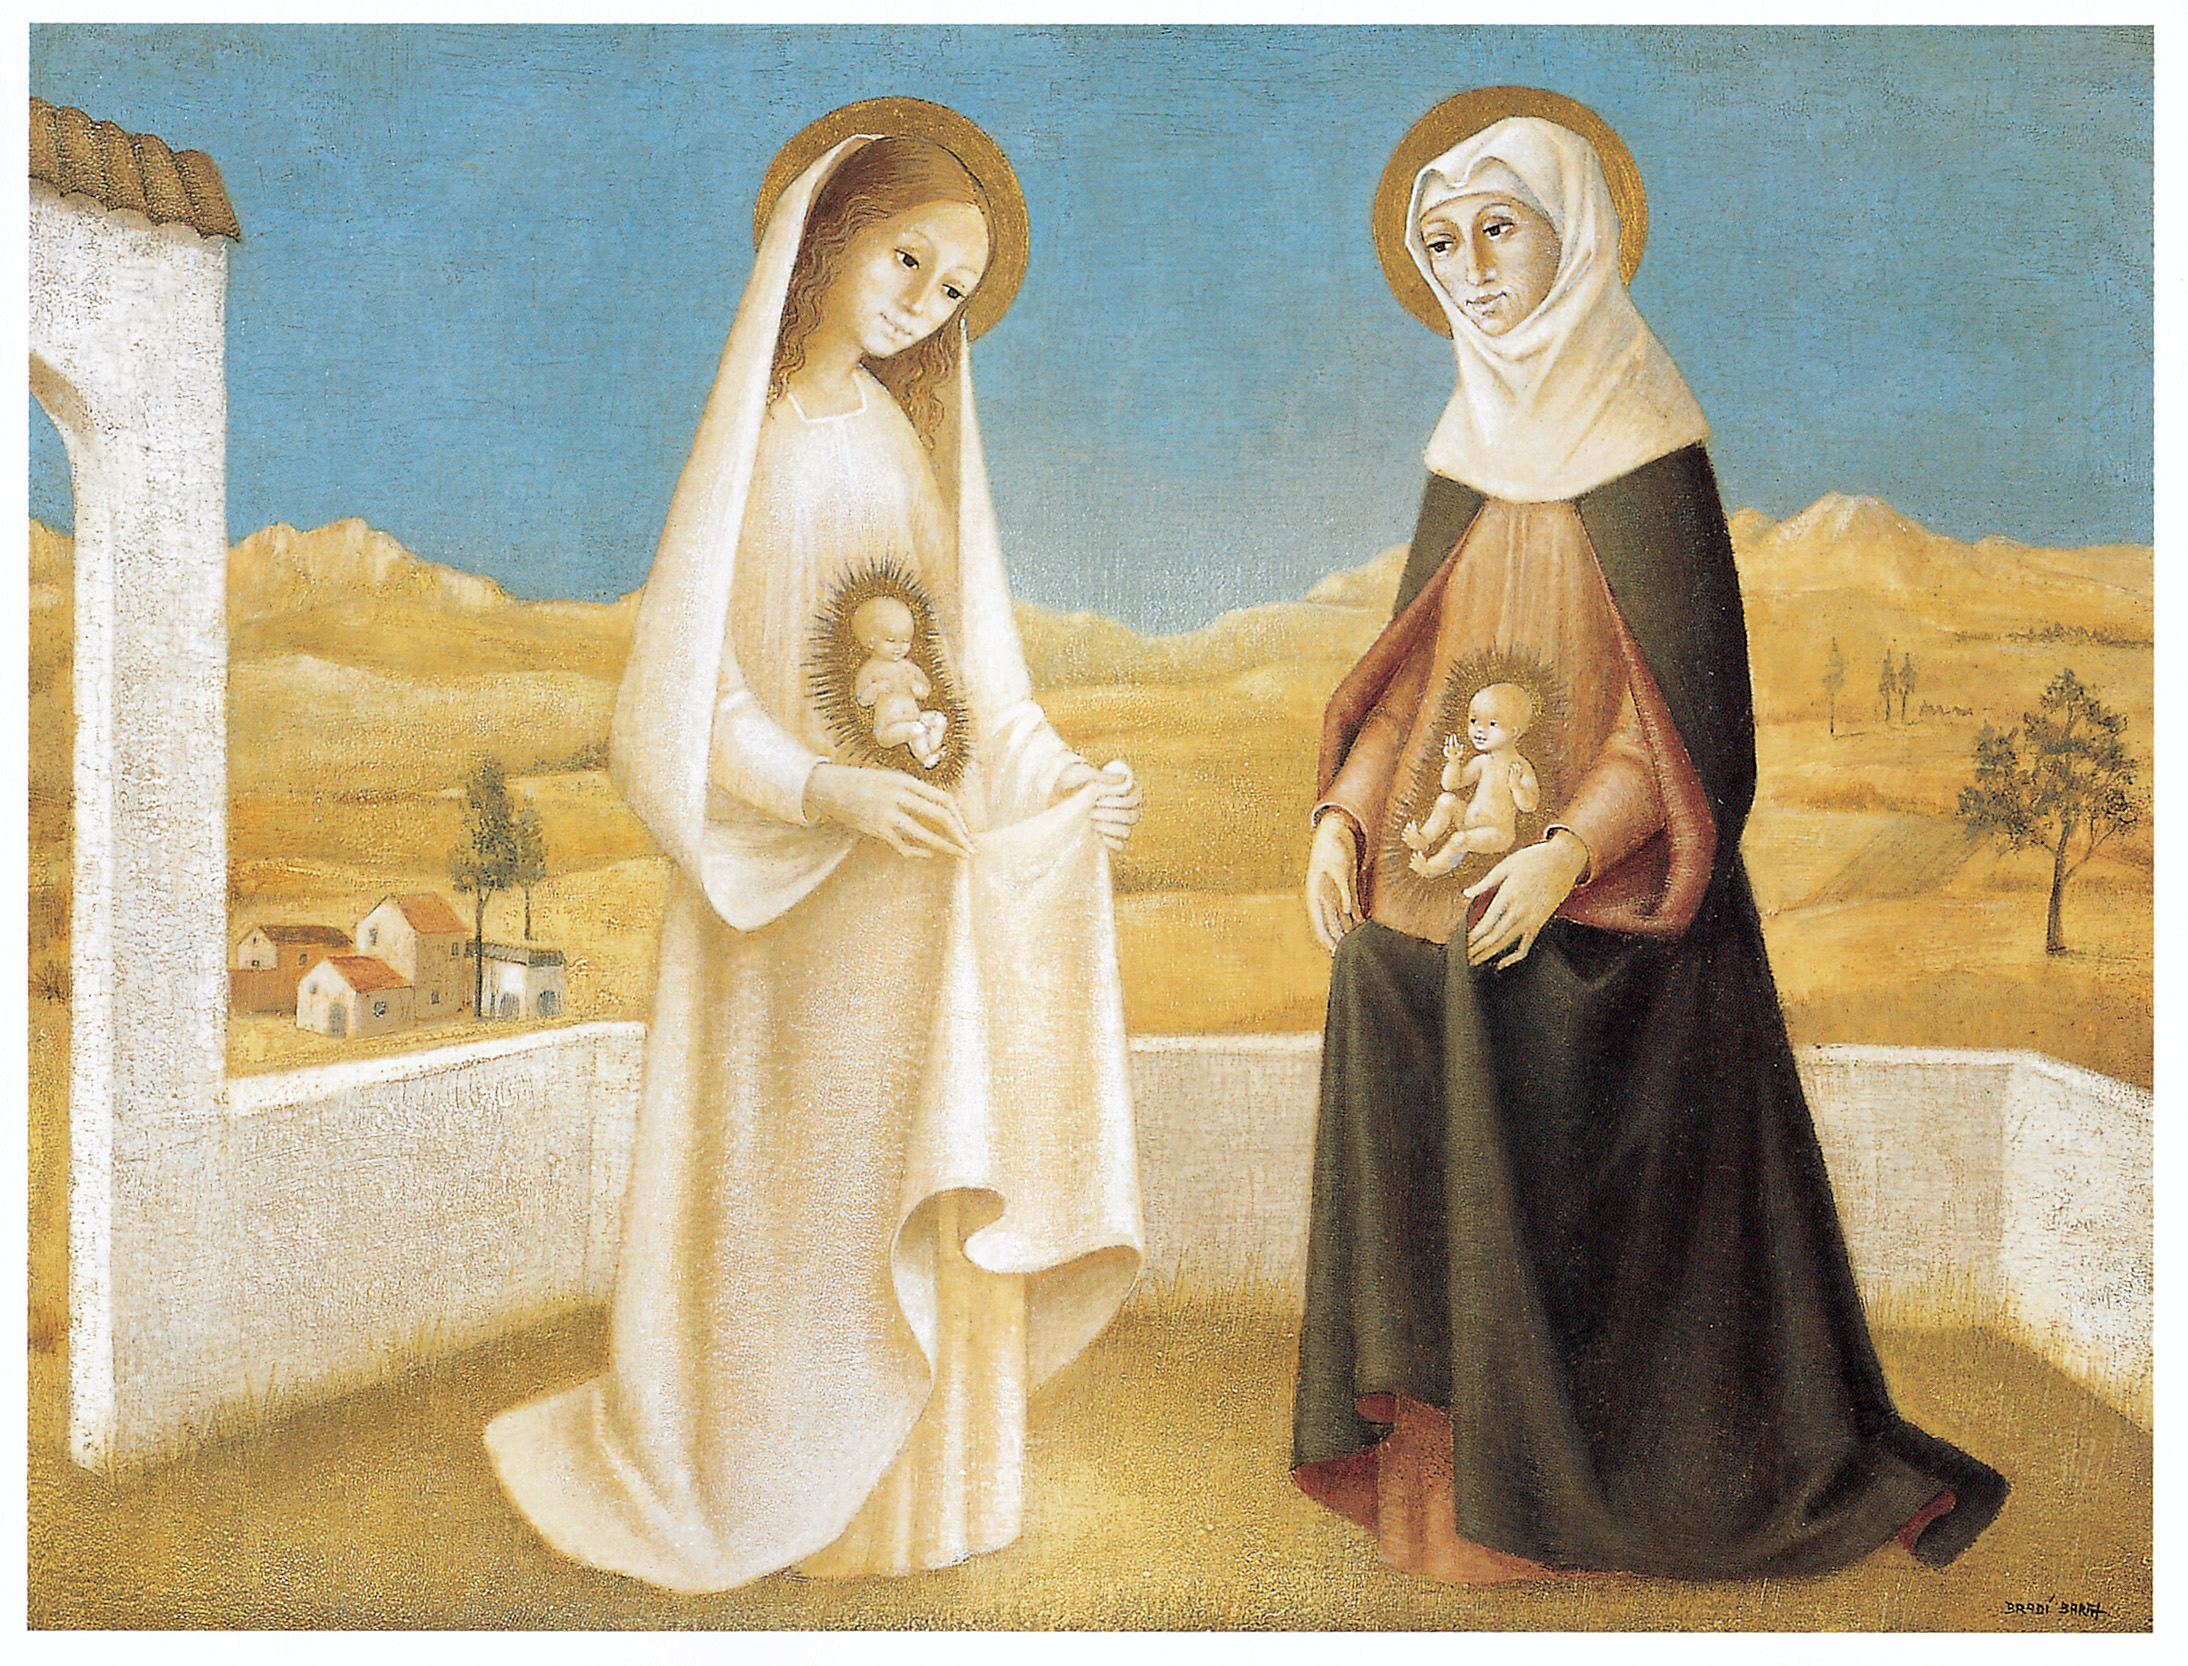 Fiesta de la Visitación de María, 1º encuentro de Jesucristo y su Precursor (31 may, 2 jul)